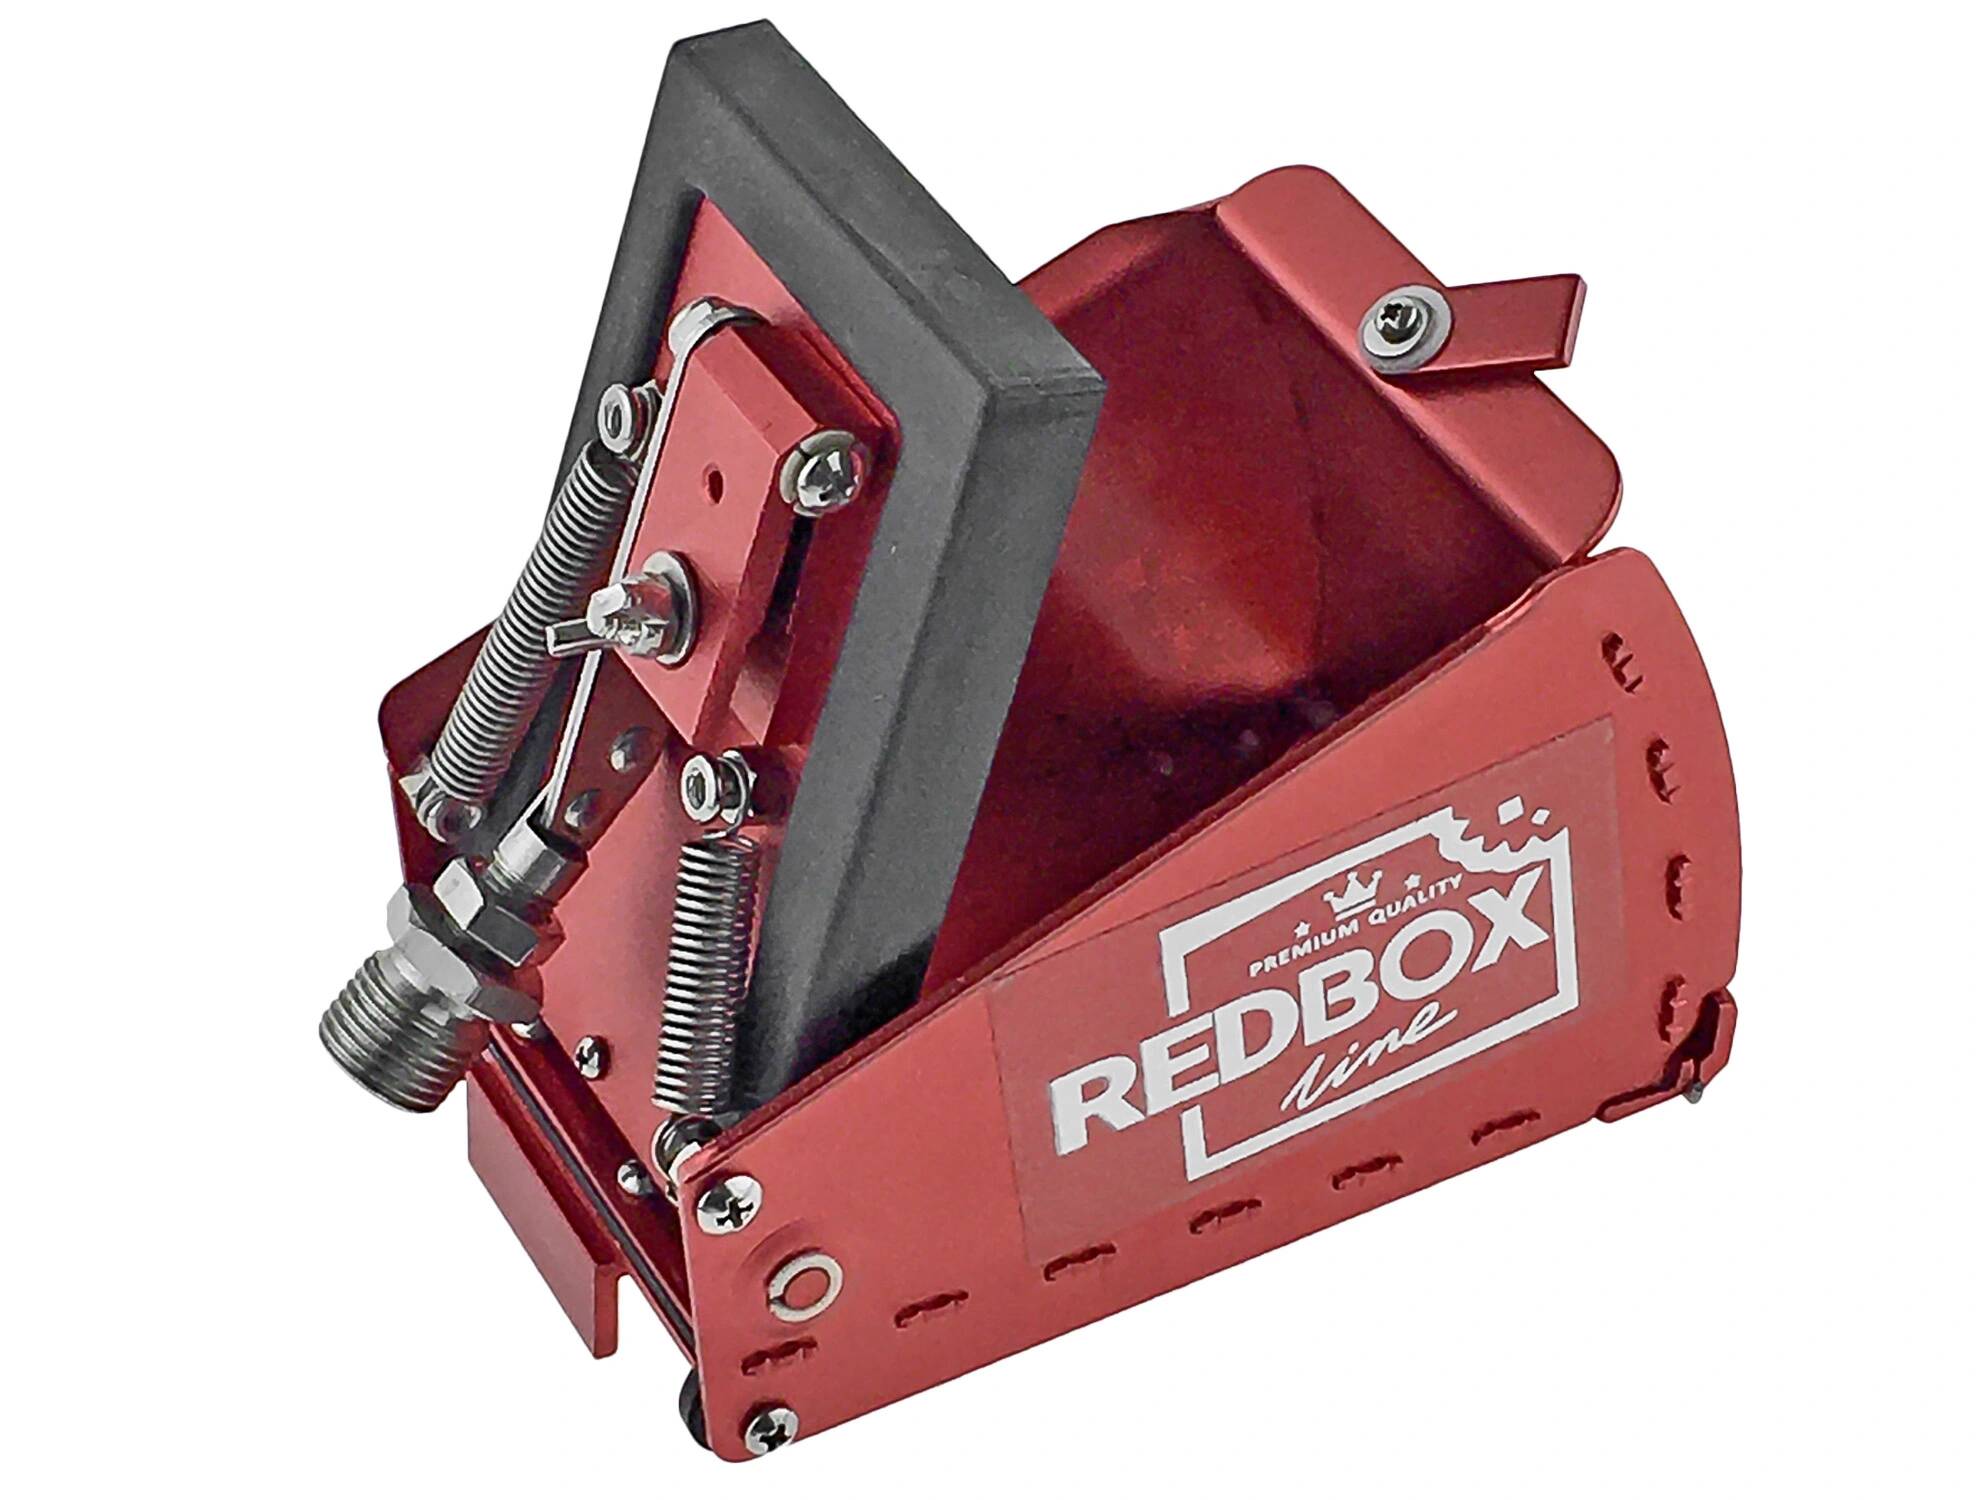 RedBox Skrzynka 8 cm do level - 5 wkrętów Skrzynki RedBox i śrub zakrywania